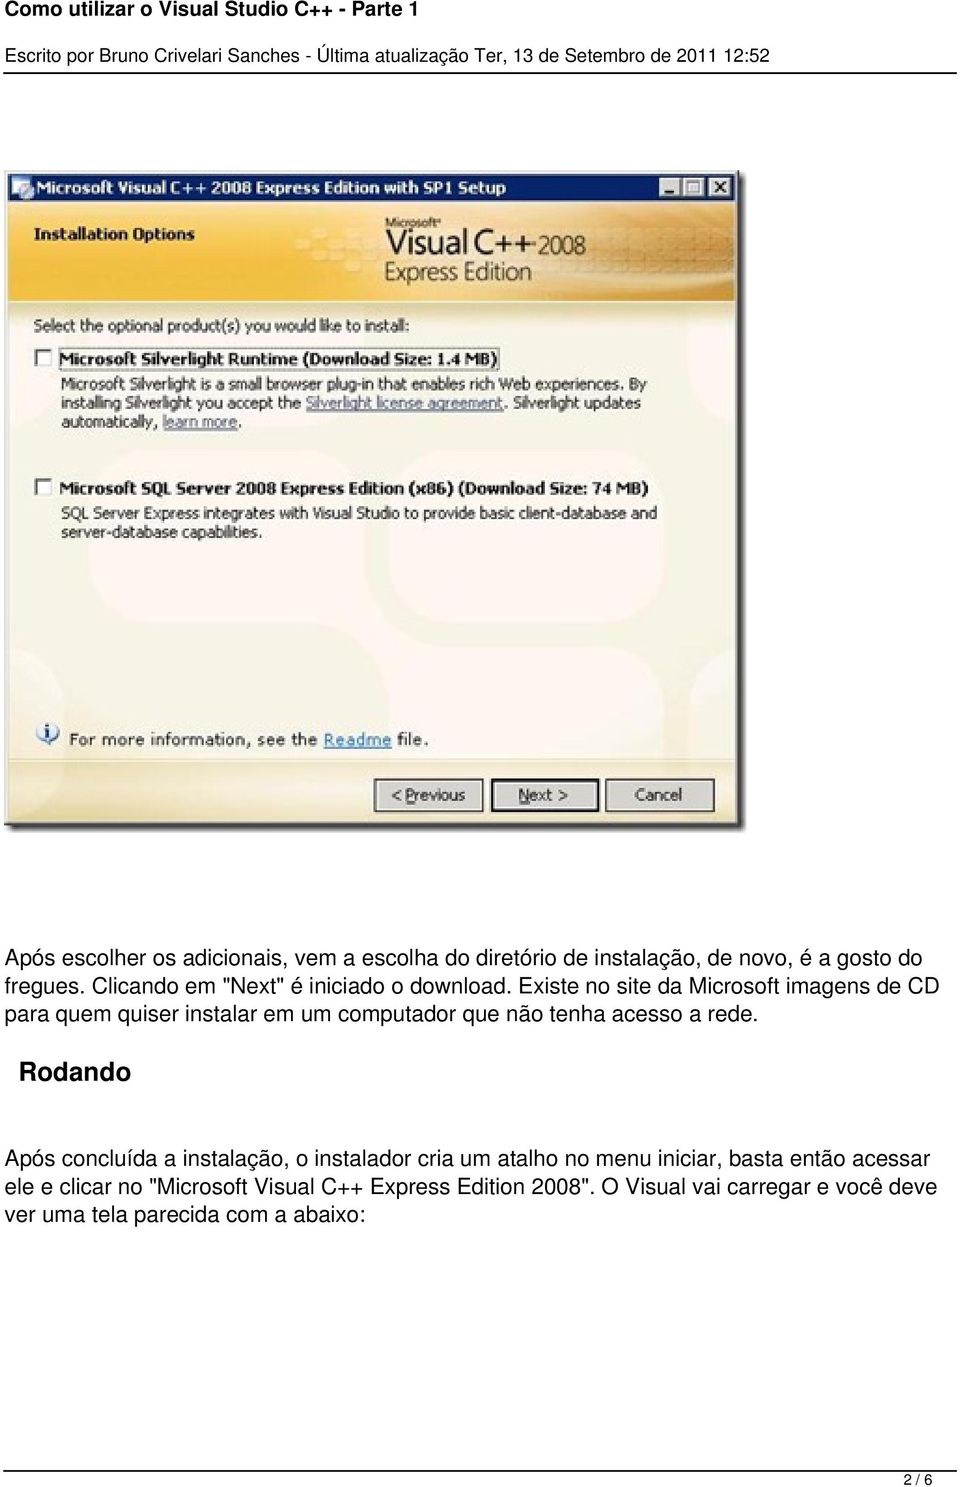 Existe no site da Microsoft imagens de CD para quem quiser instalar em um computador que não tenha acesso a rede.